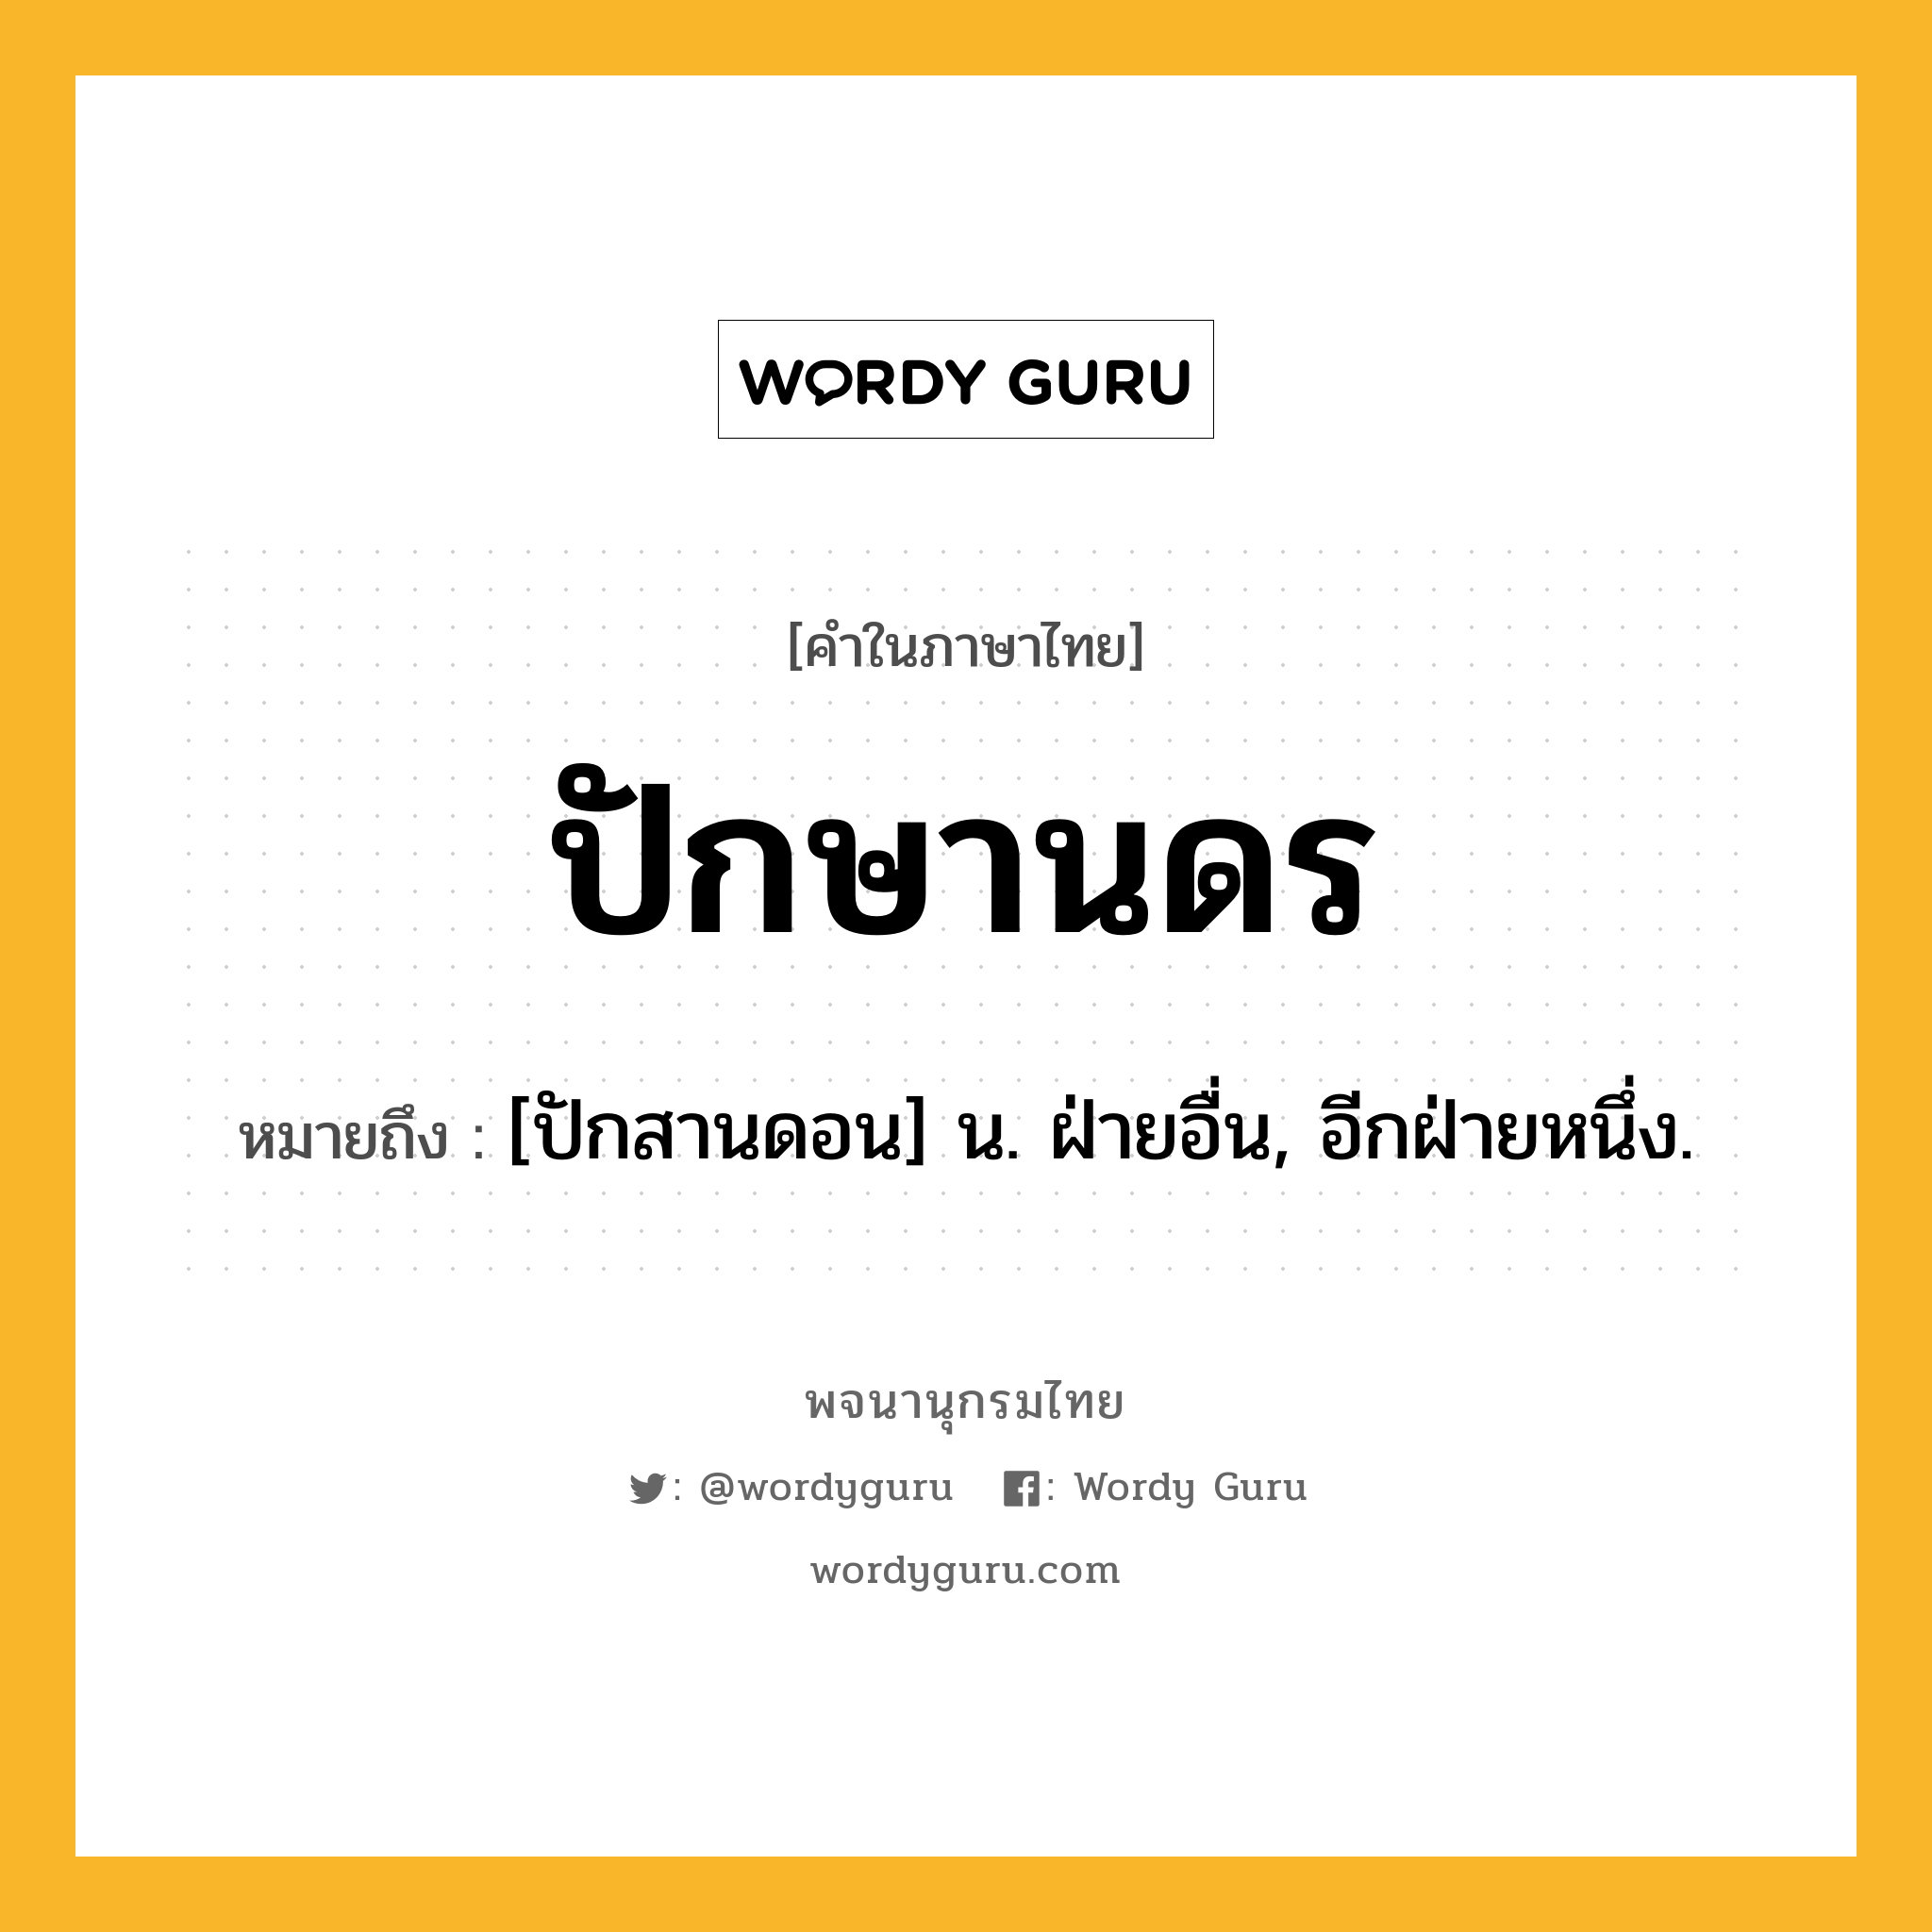 ปักษานดร ความหมาย หมายถึงอะไร?, คำในภาษาไทย ปักษานดร หมายถึง [ปักสานดอน] น. ฝ่ายอื่น, อีกฝ่ายหนึ่ง.